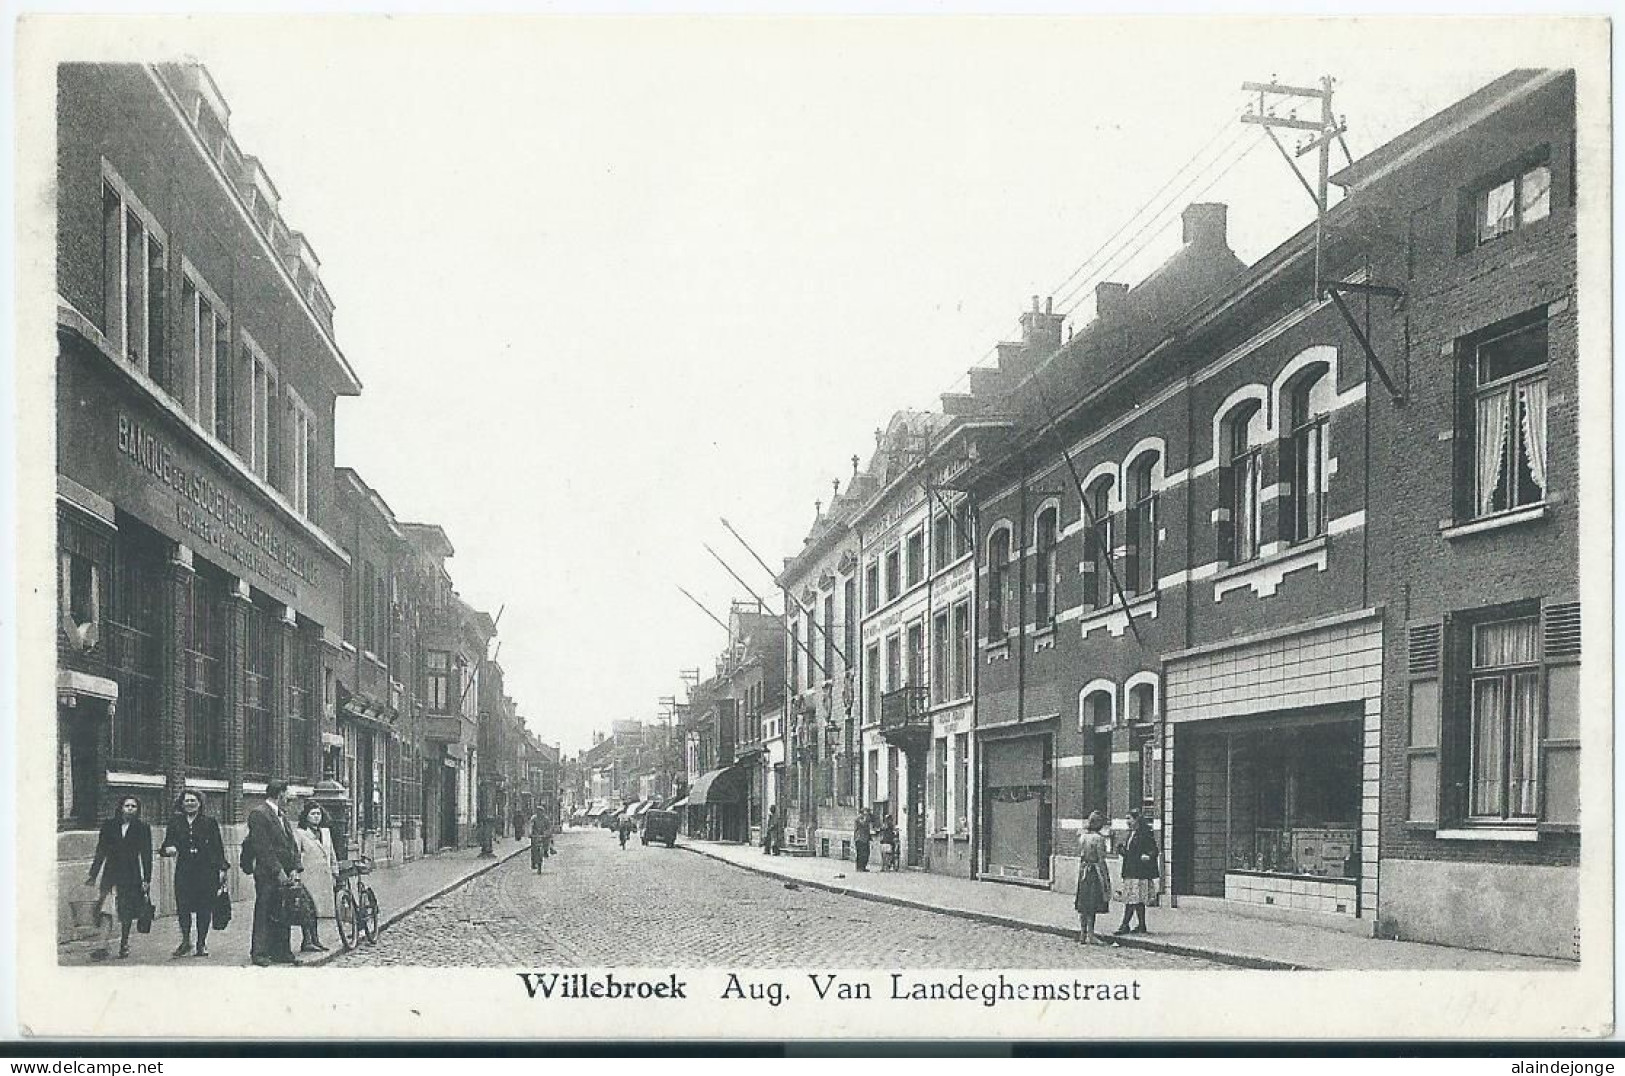 Willebroek - Willebroeck - Aug. Van Landeghemstraat  - Willebroek